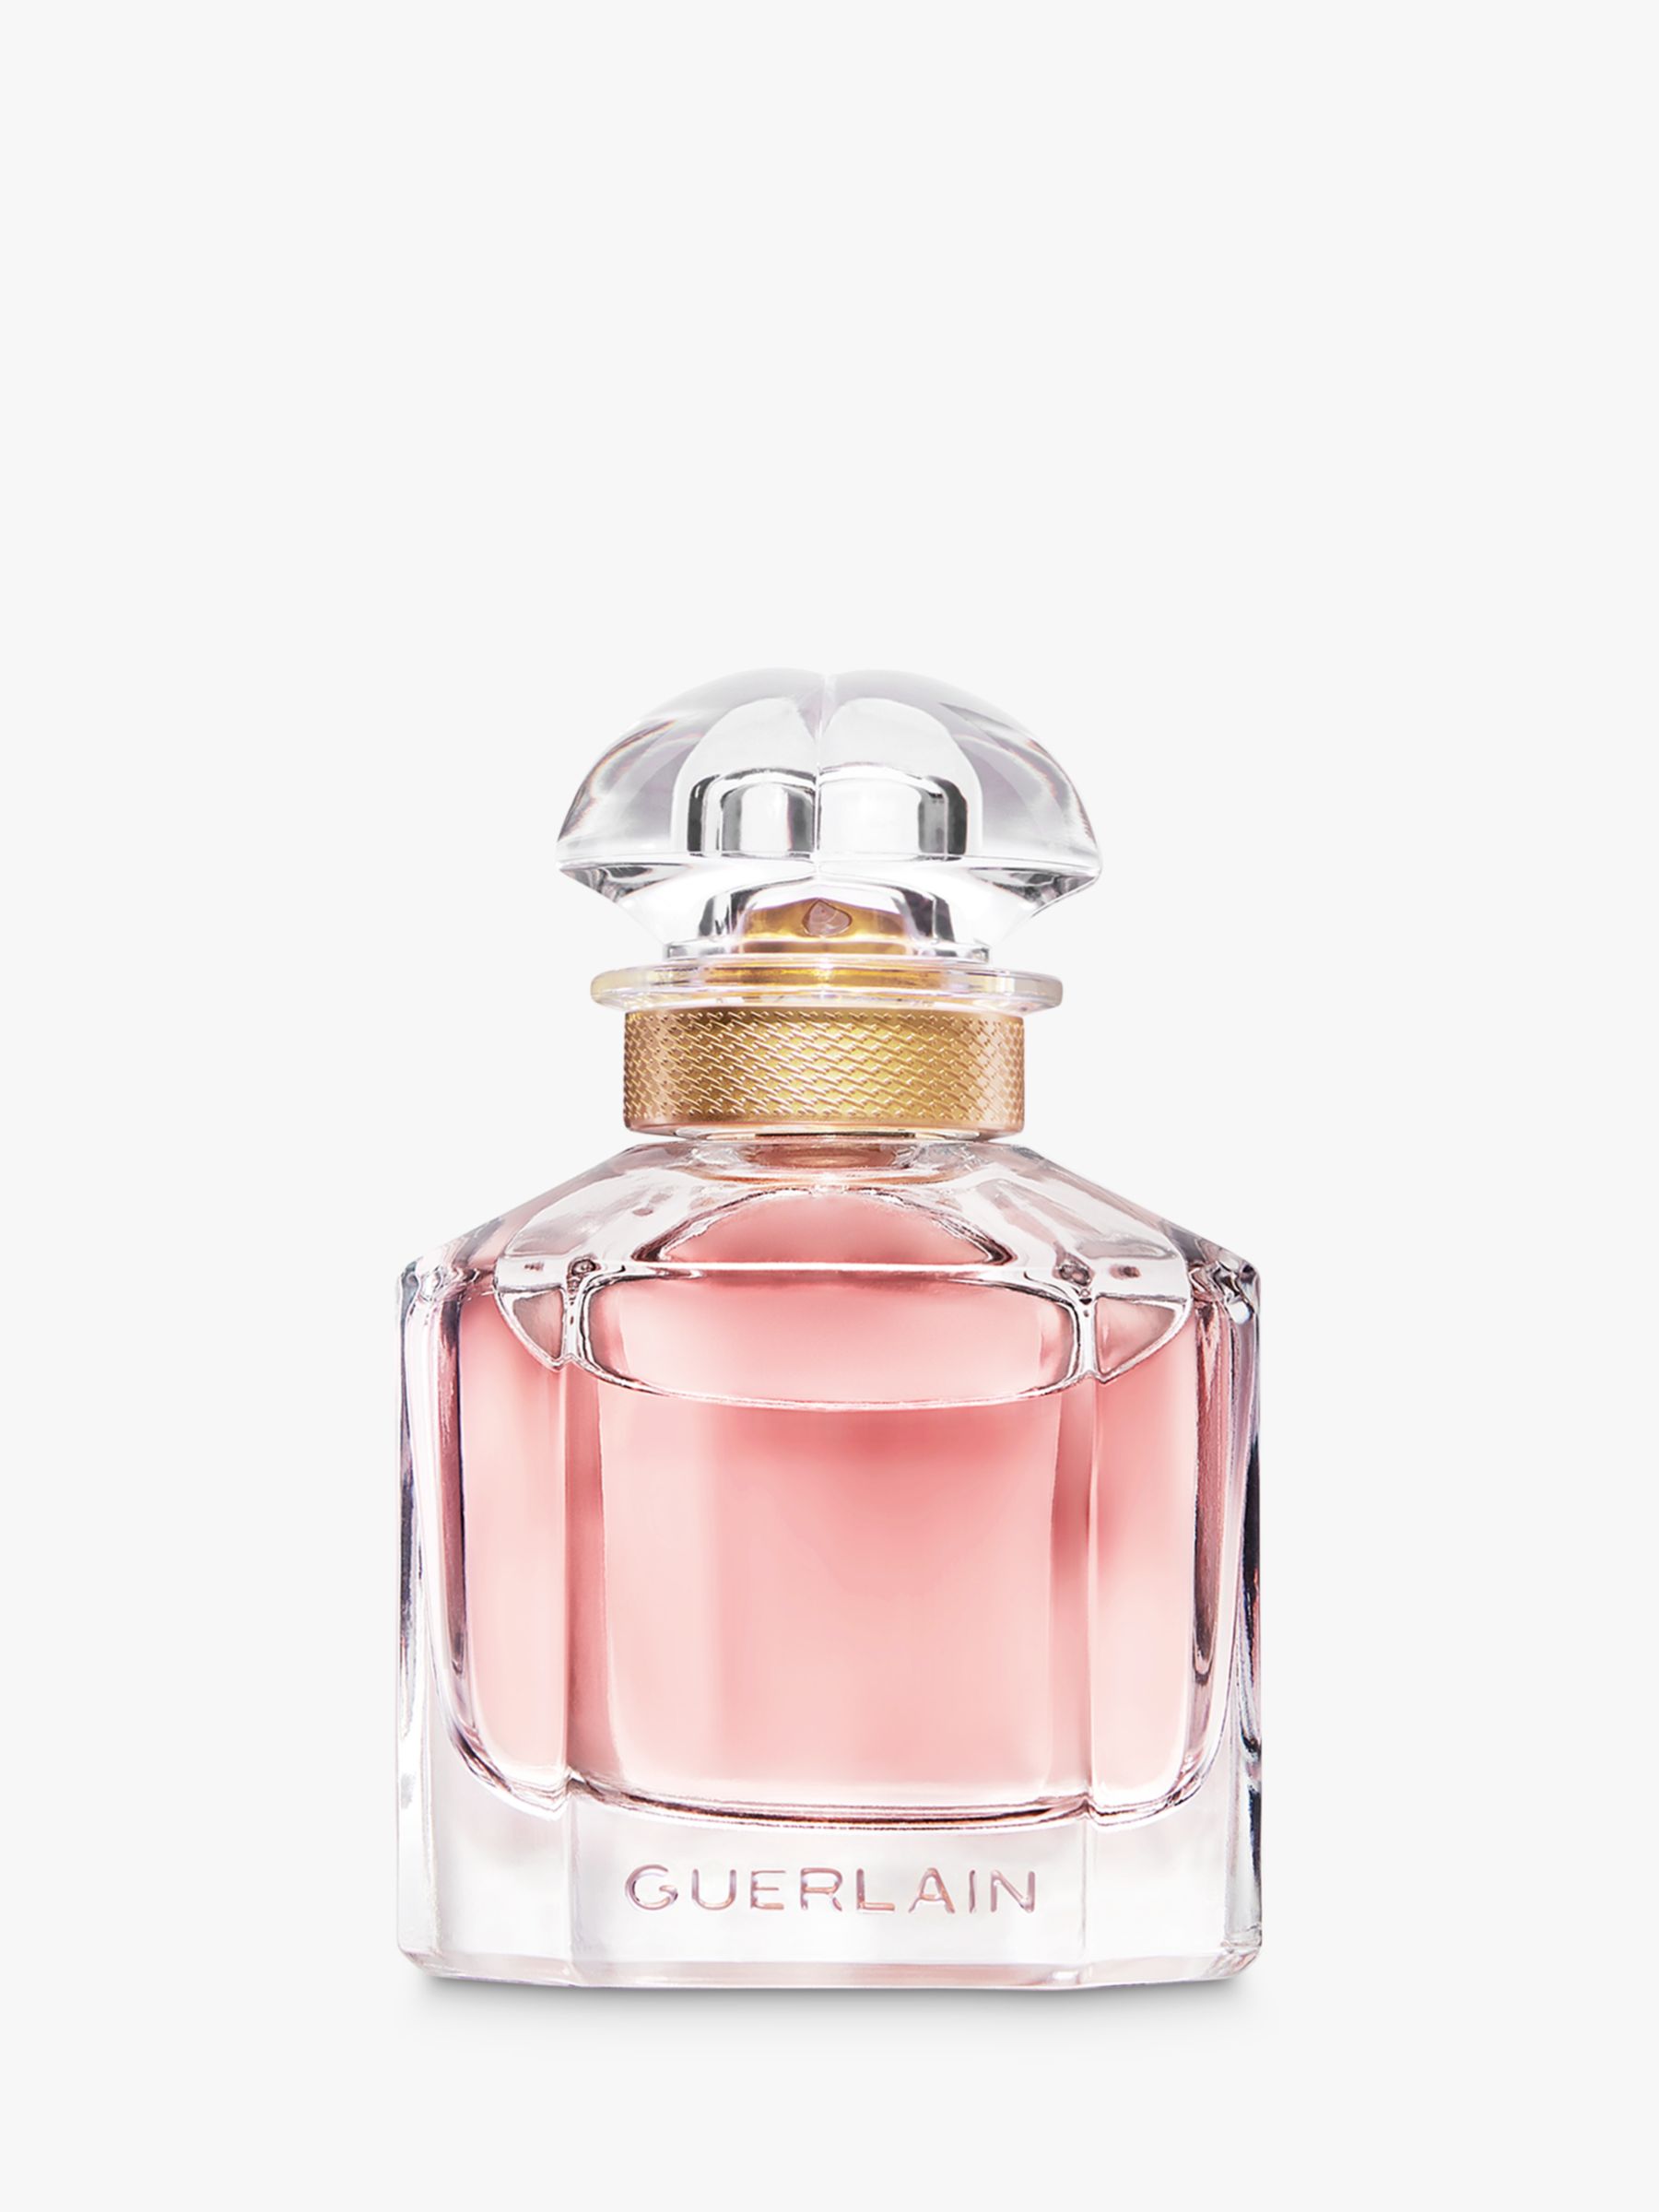 Guerlain Mon Guerlain Eau de Parfum, 50ml at John Lewis & Partners